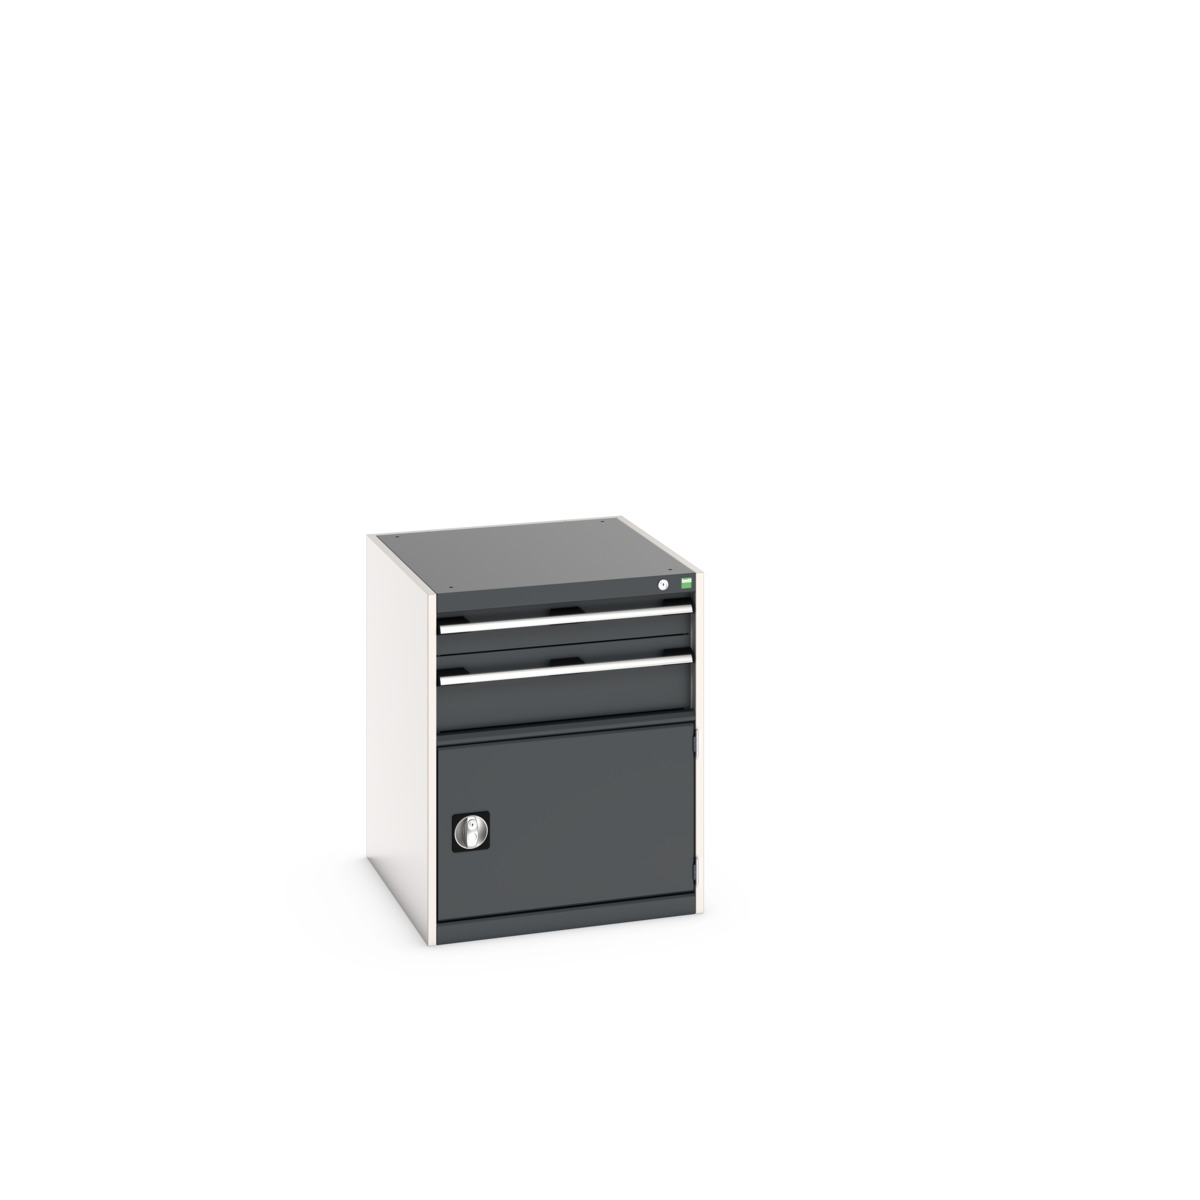 40027011. - cubio drawer-door cabinet